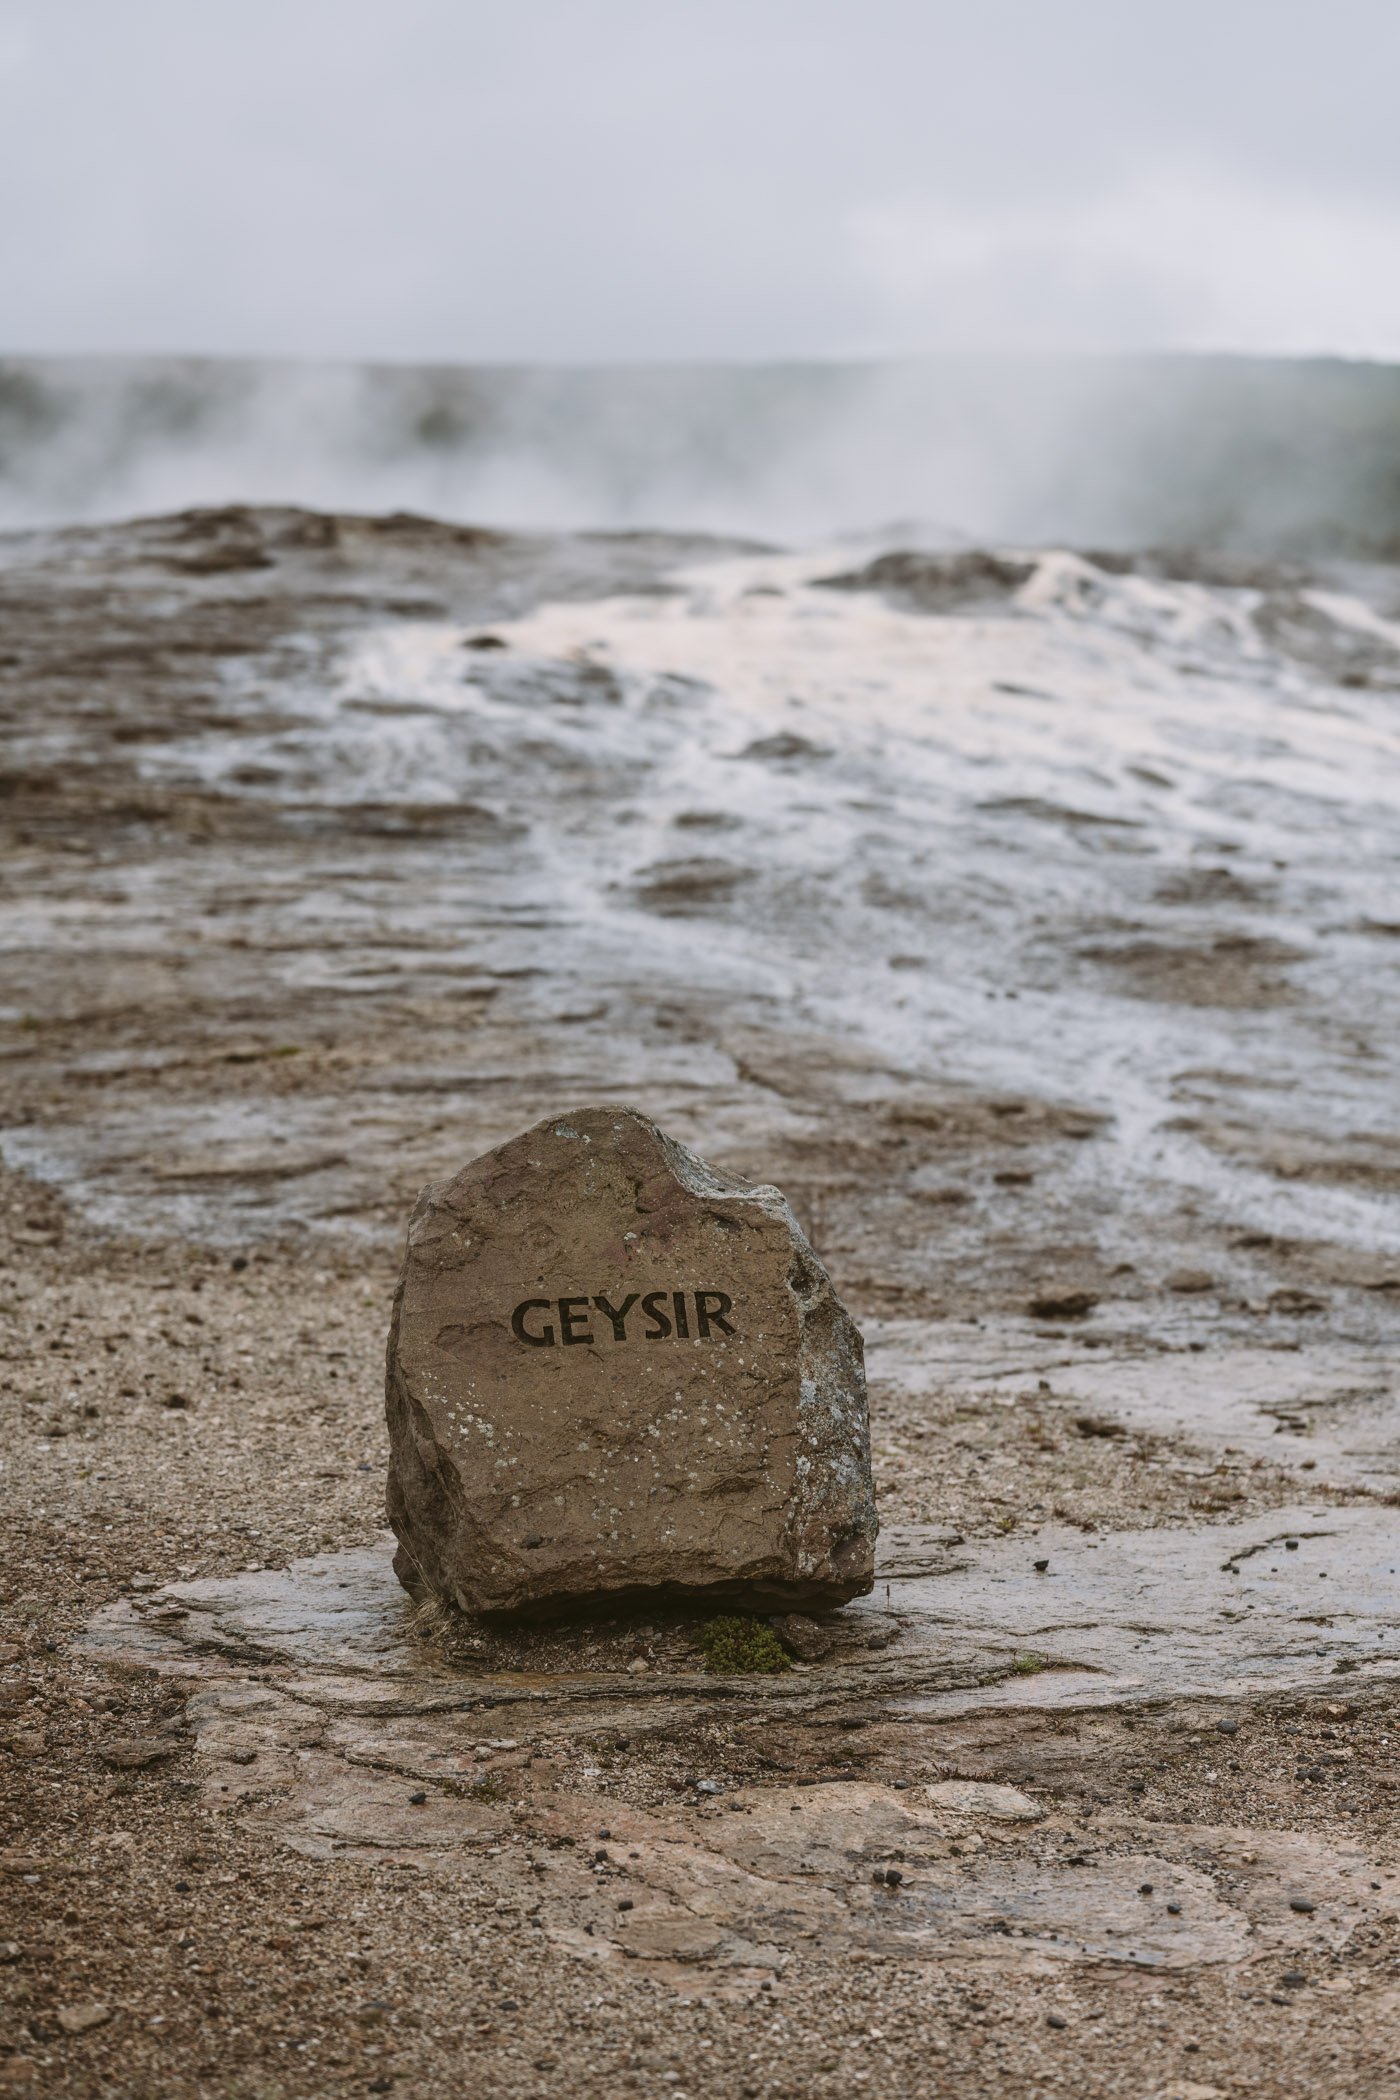 Geysir in Iceland